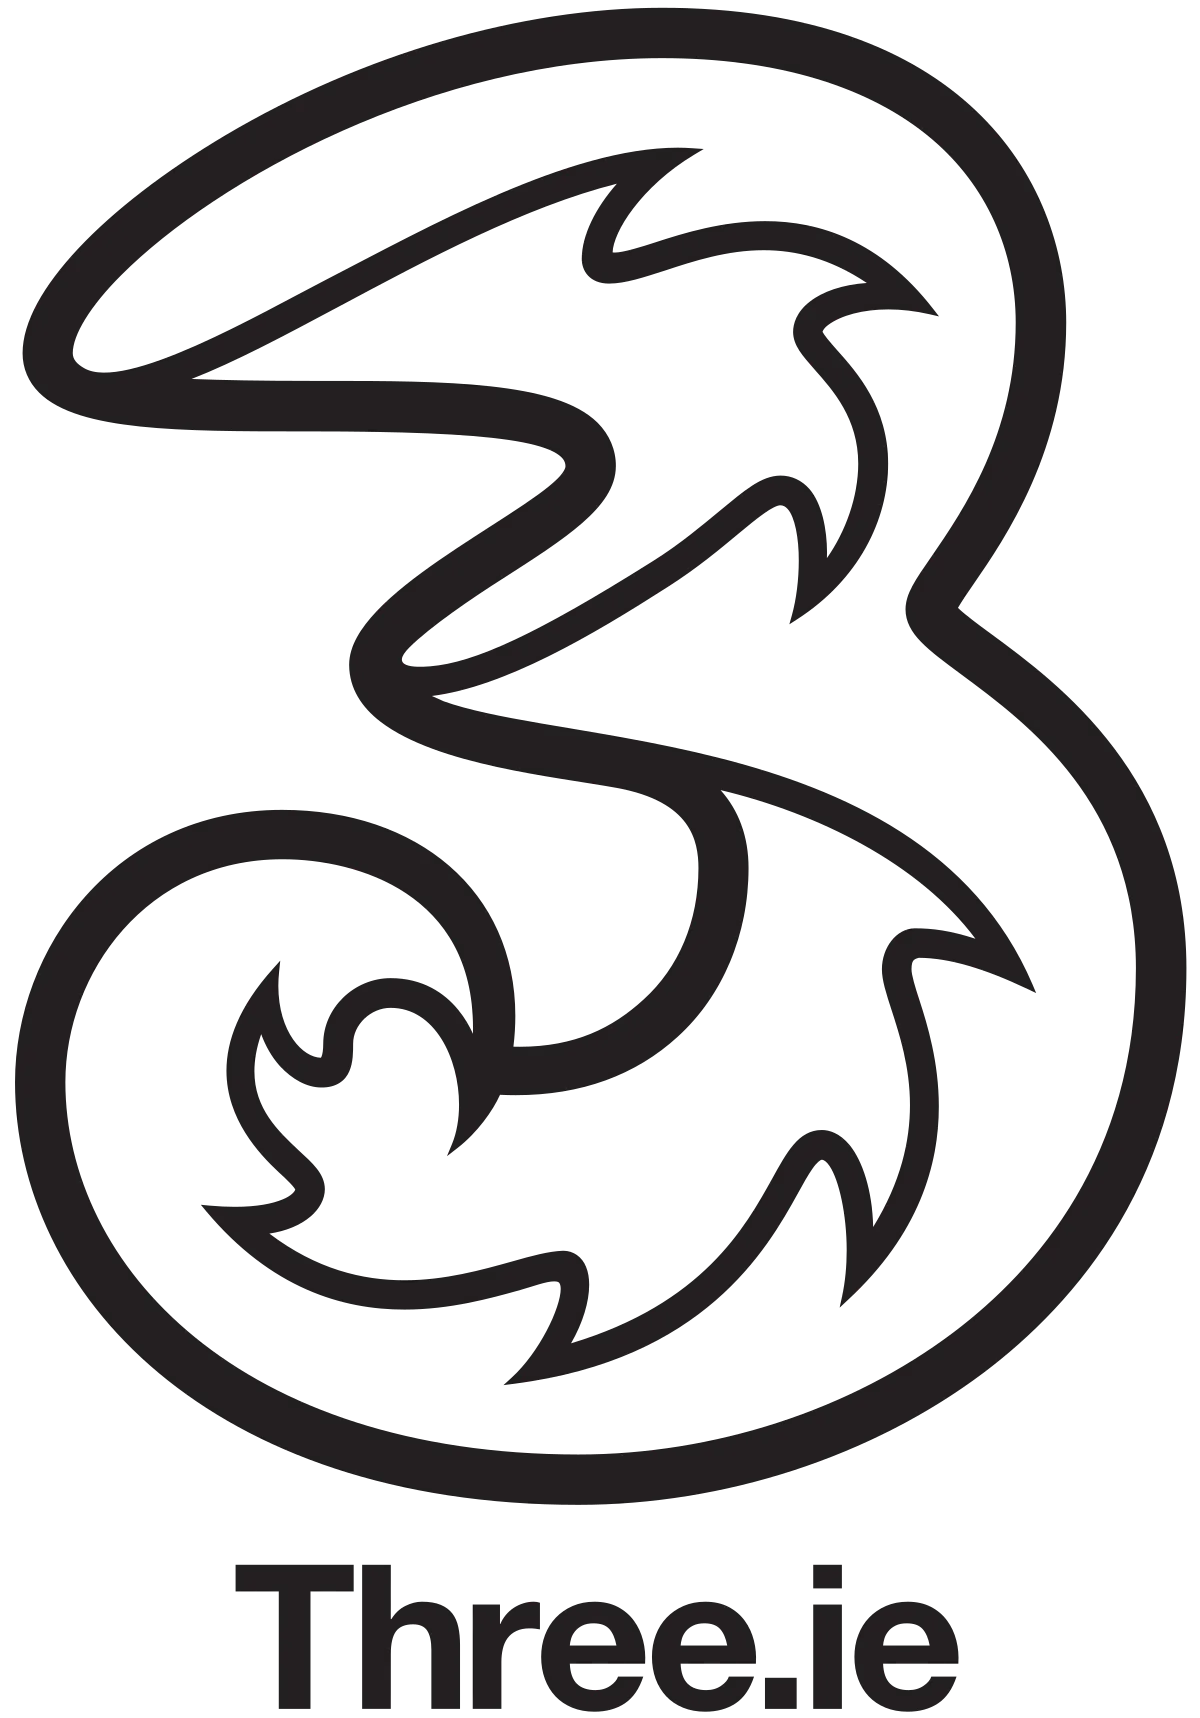 Three_Ireland_logo.svg